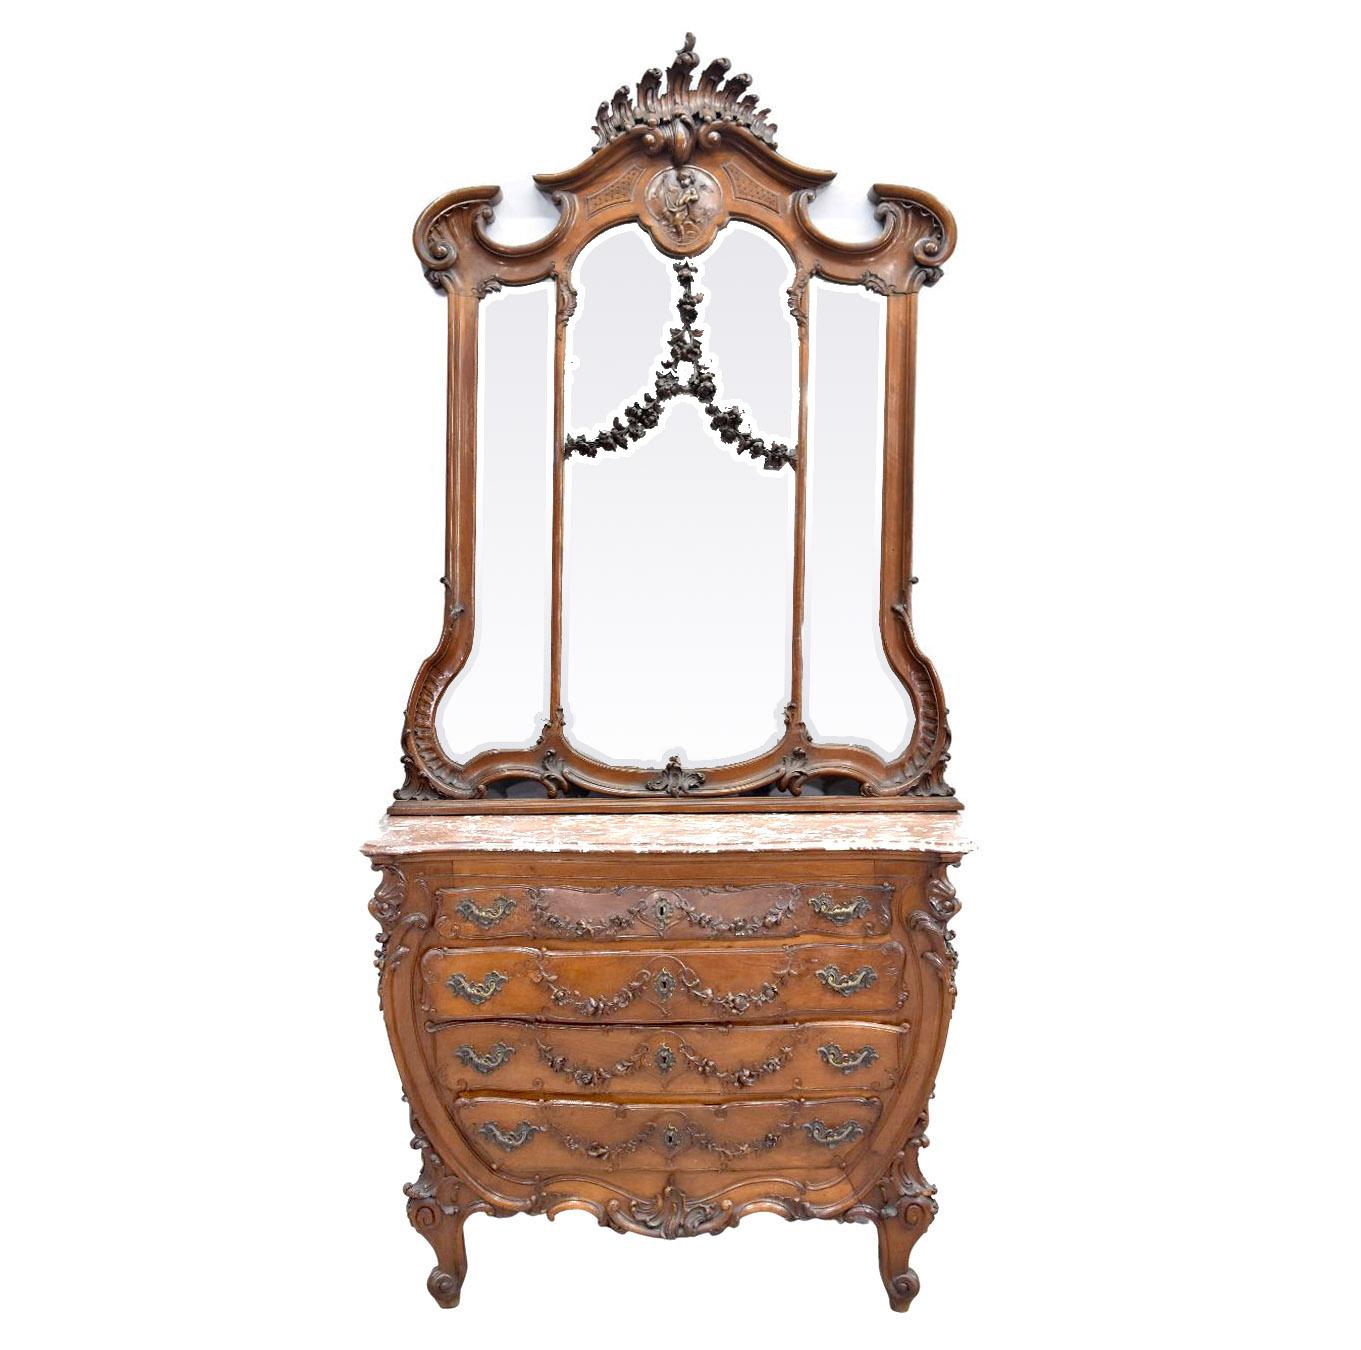 19. Barock Louis XV Rokoko Stil Spiegelschrank Nussbaum Frisiertisch mit Putti reich geschnitzt. Teil eines Sets mit einem Kleiderschrank, einem Bett und einem Paar Nachttischen.